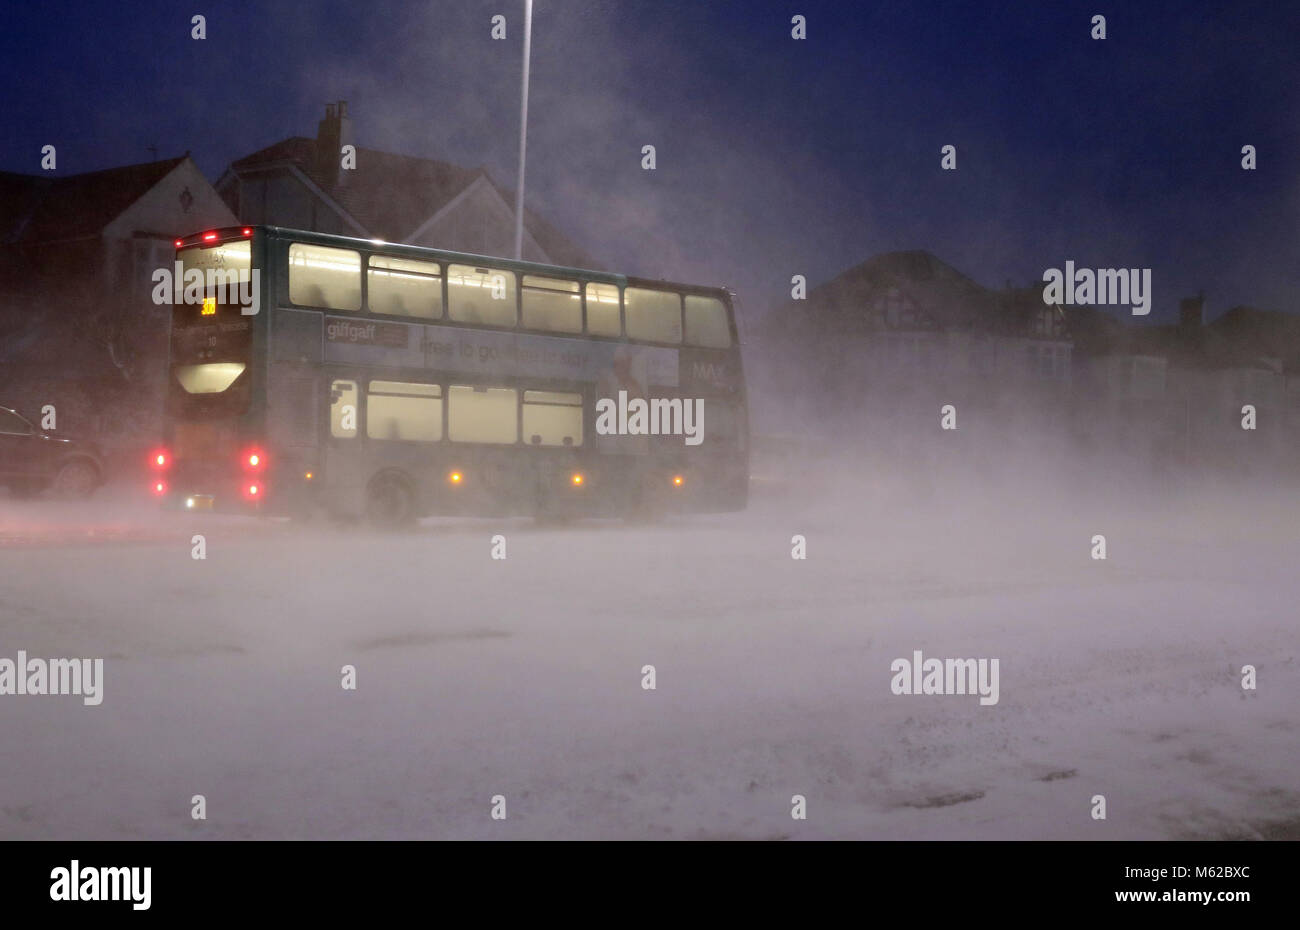 Un bus passe par une tempête de neige à Whitley Bay, comme beaucoup de neige a causé plus de misère pour les voyageurs de la nuit. Banque D'Images